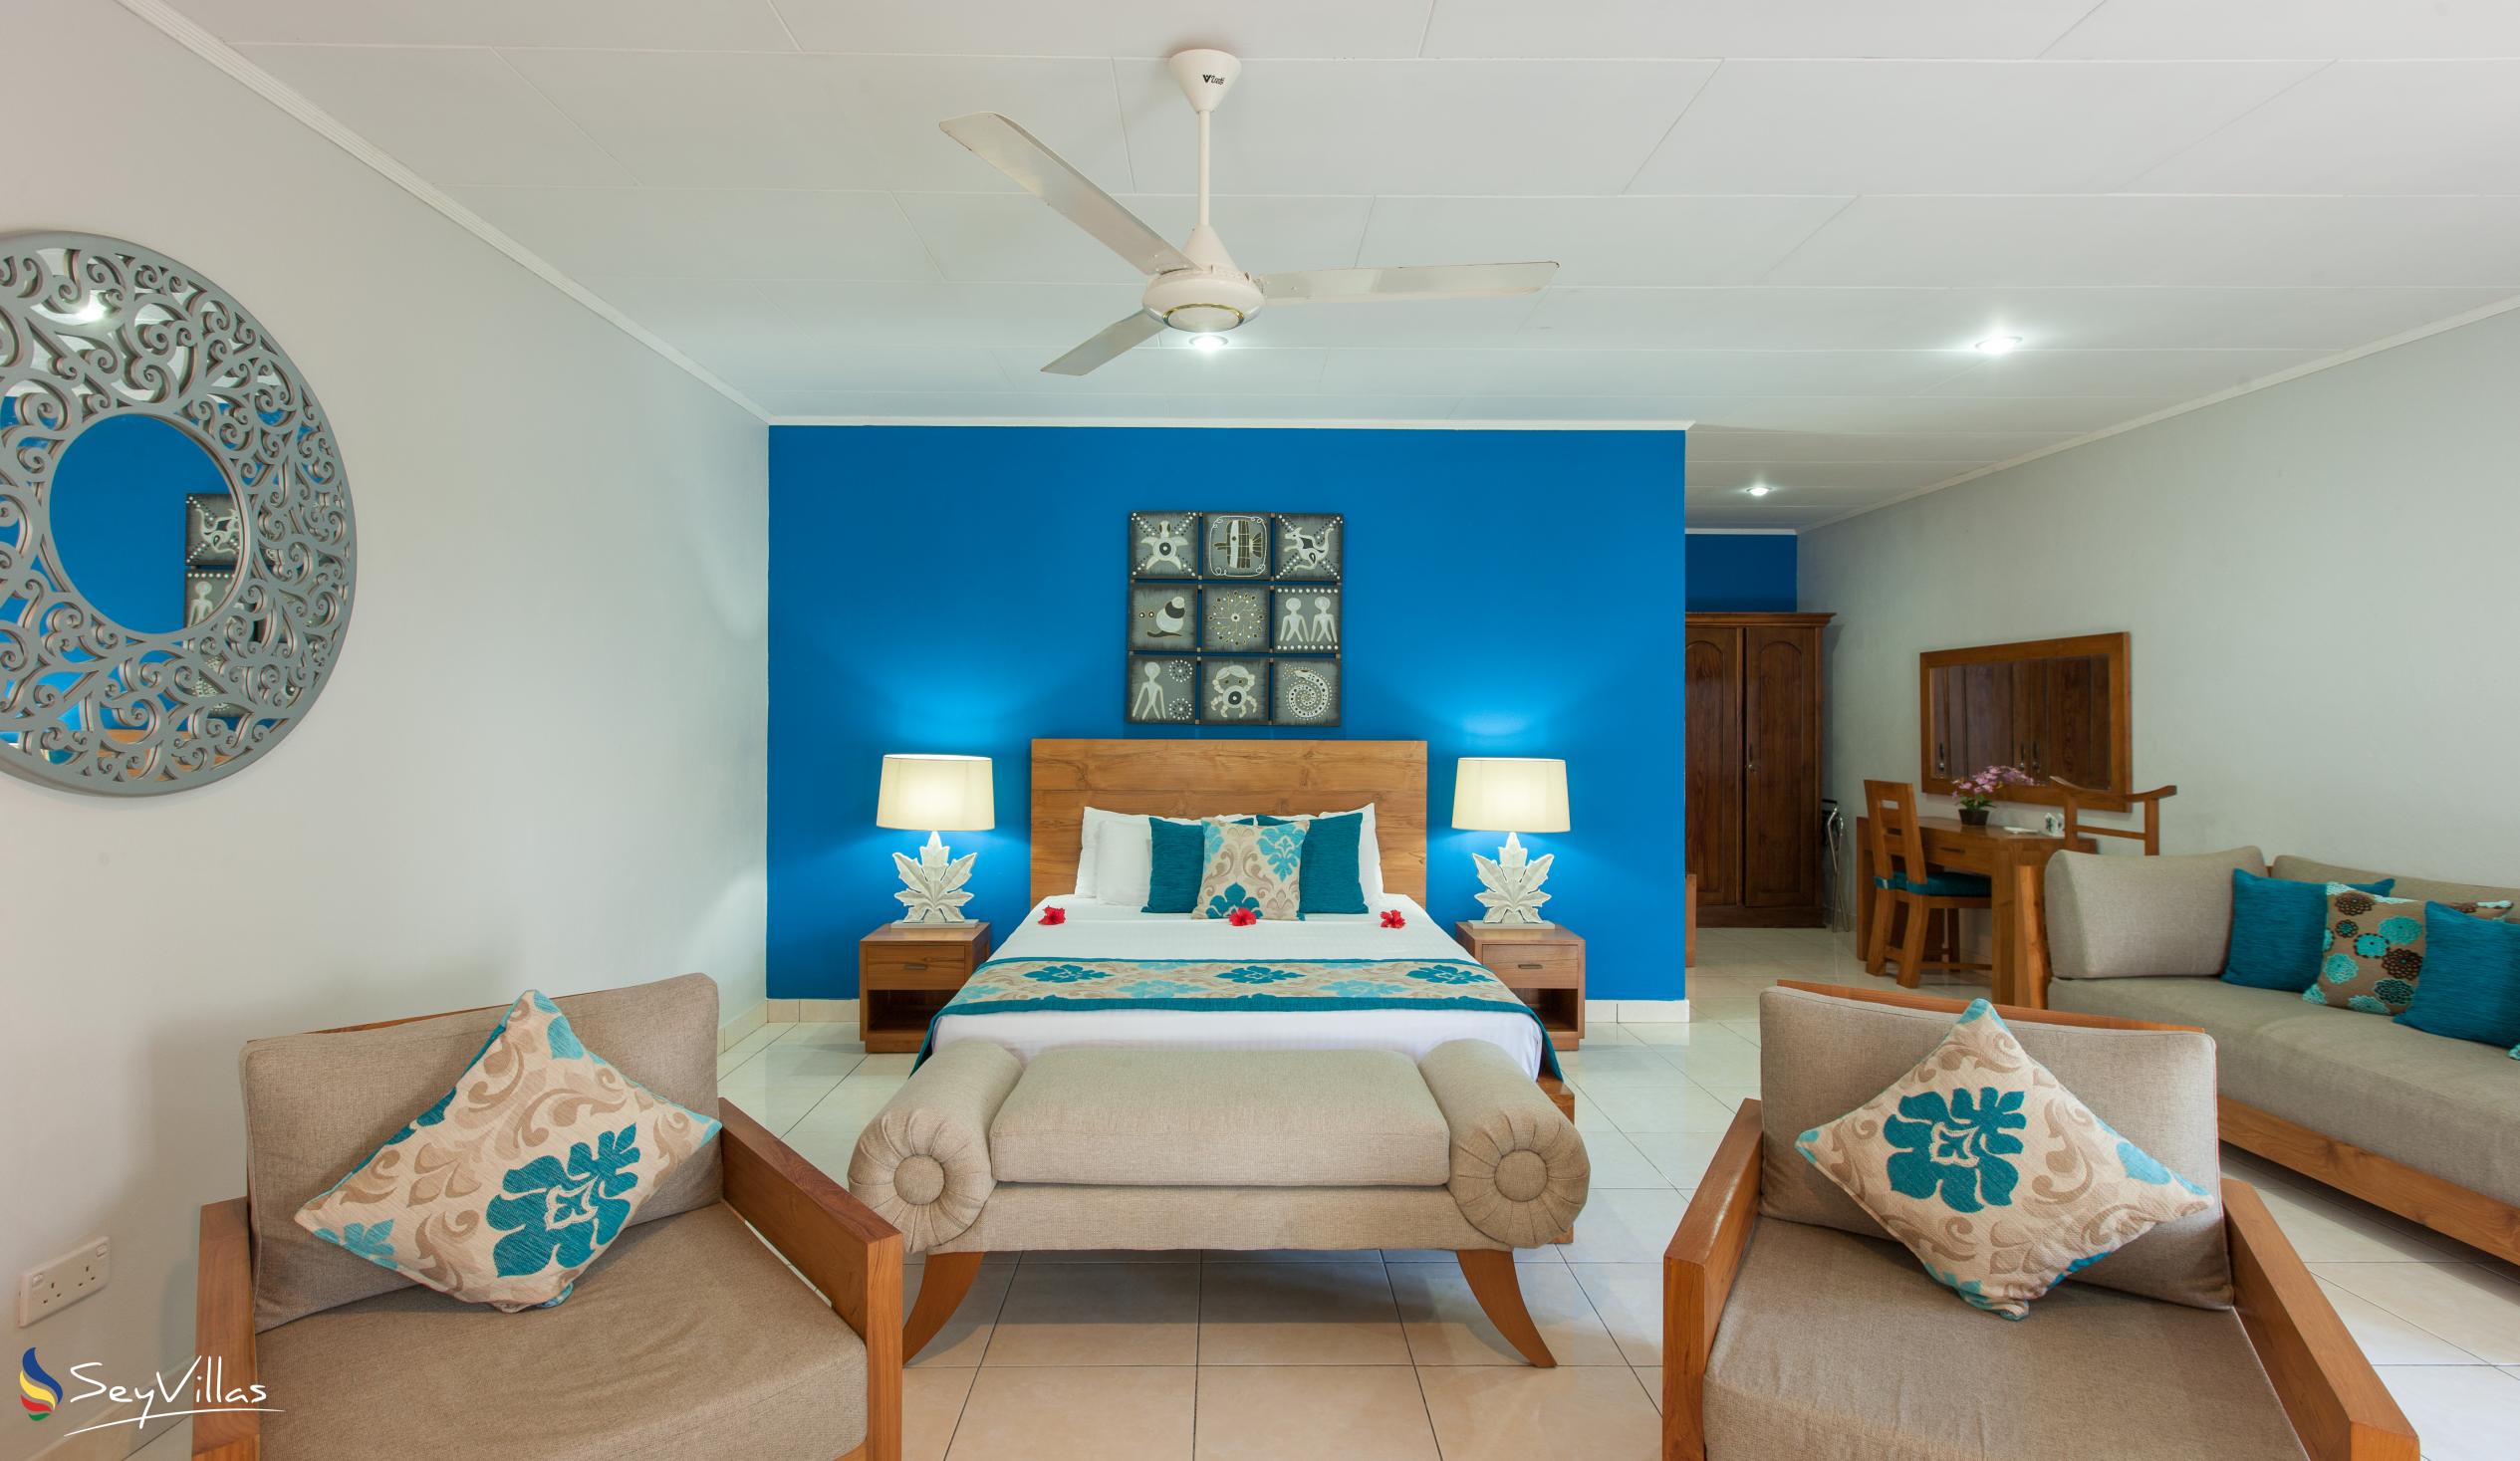 Foto 41: Villas de Mer - Junior Suite - Praslin (Seychelles)